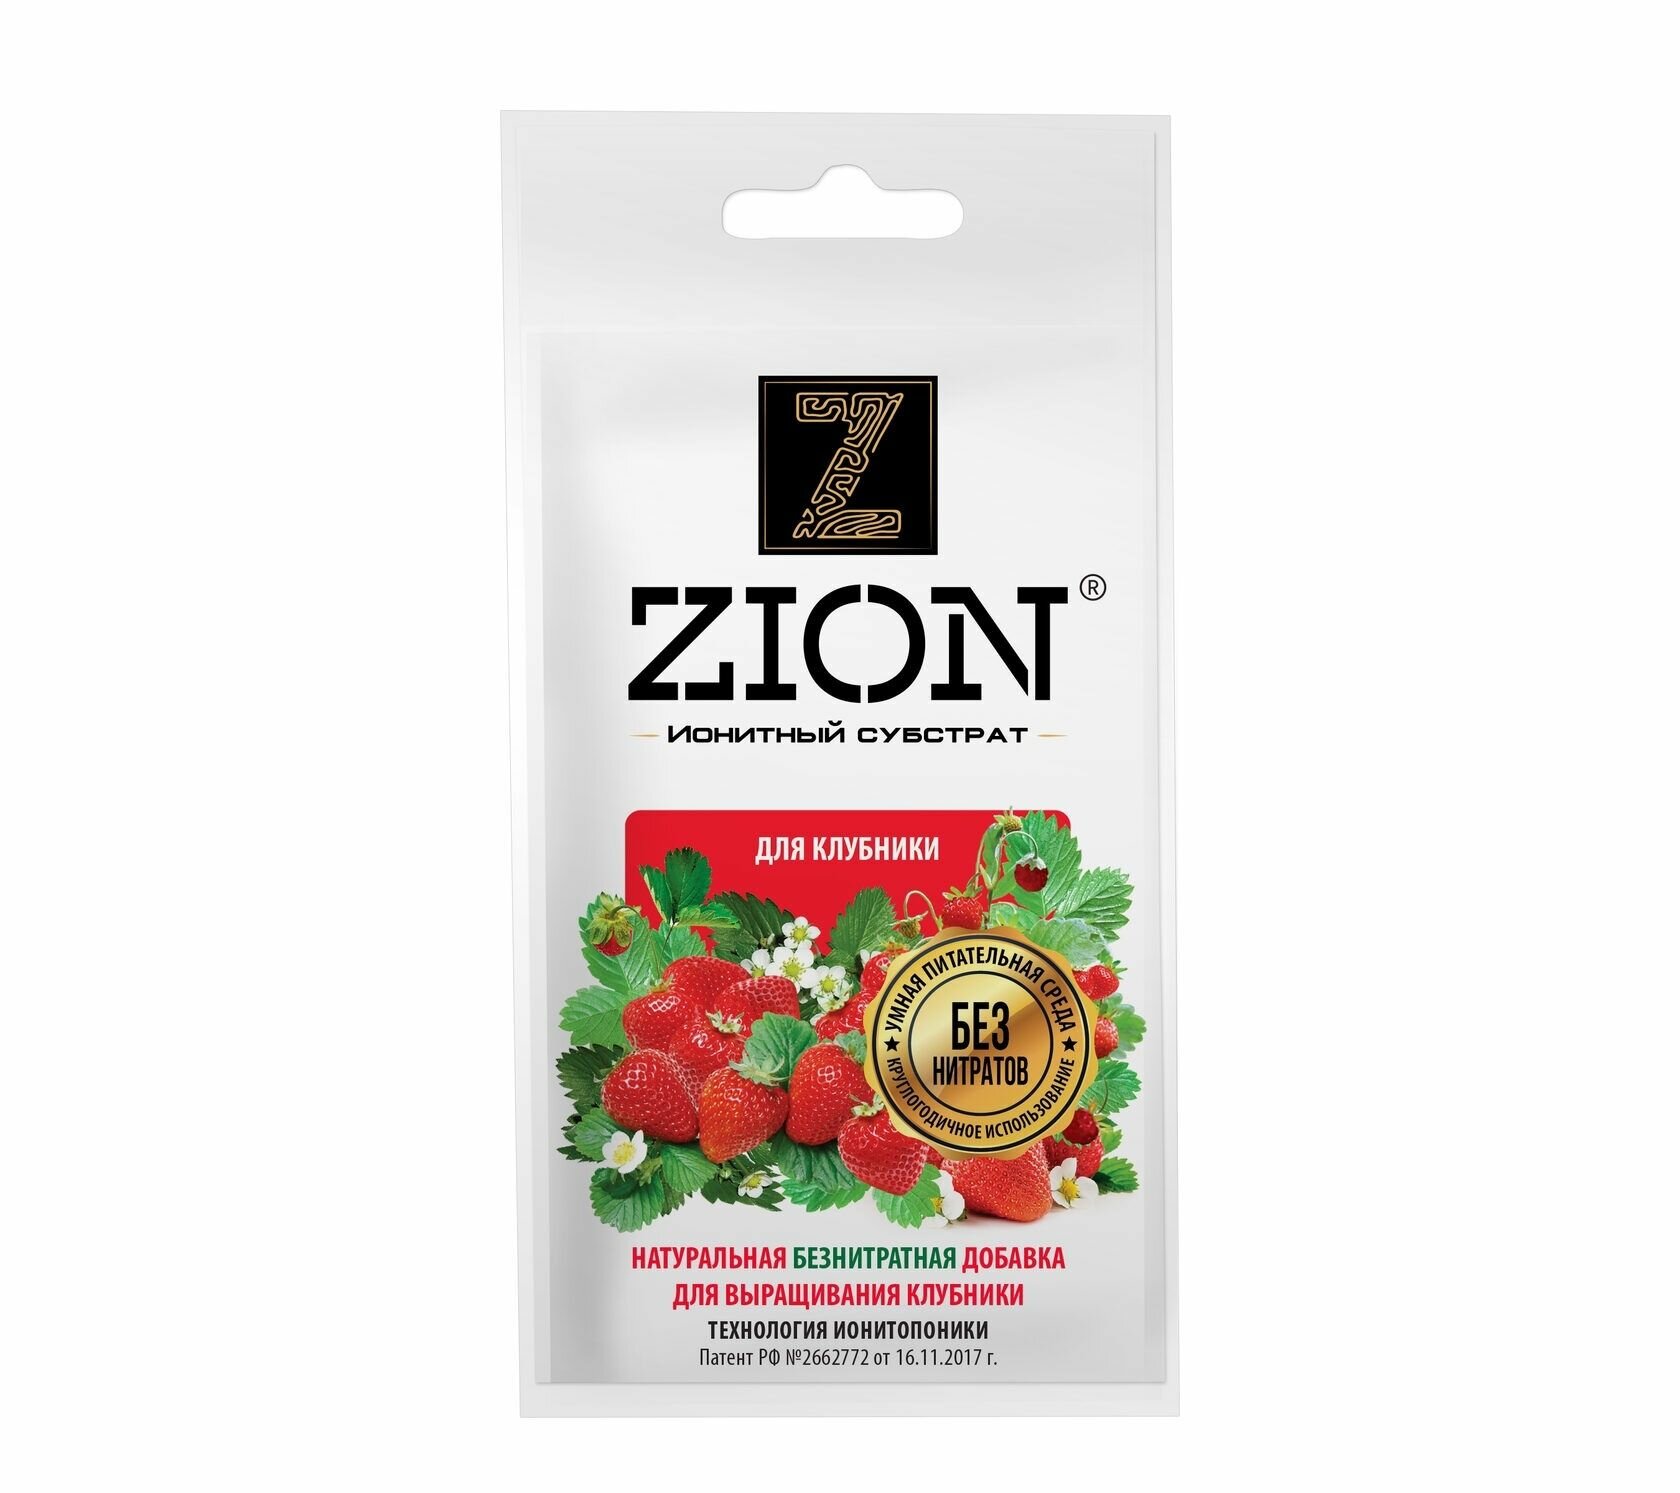 Ионитный субстрат для выращивания клубники цион (ZION)( 30 г. - 10 шт.)